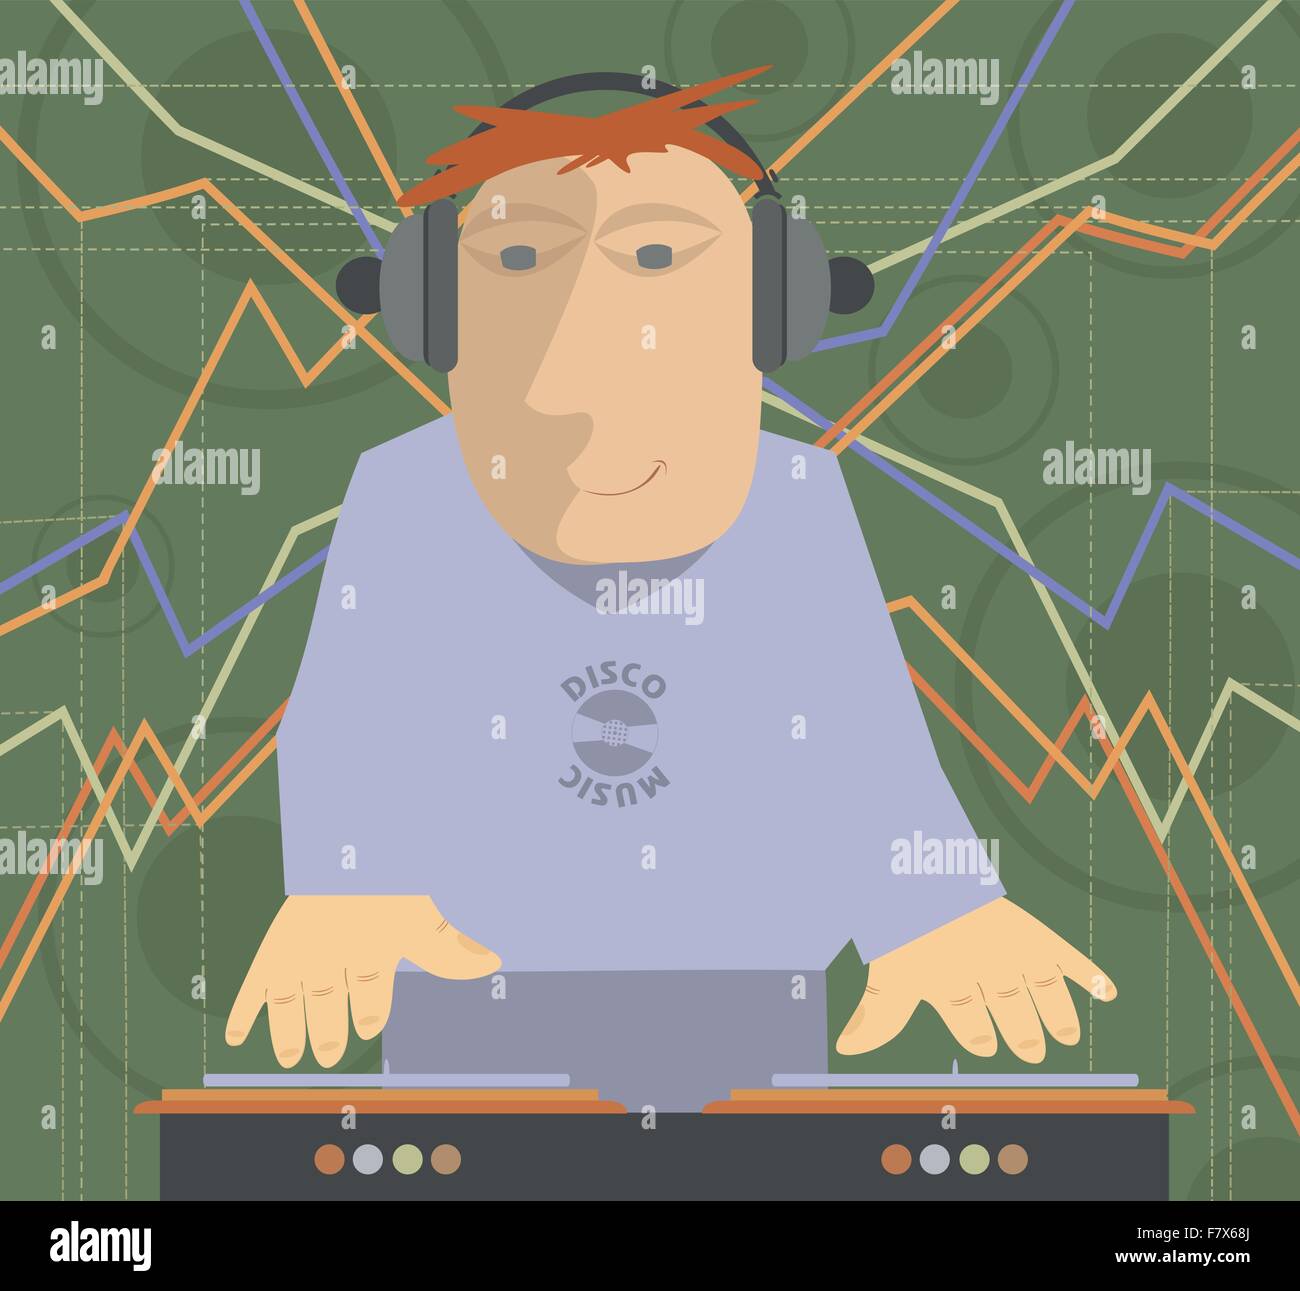 Cartoon funny DJ illustration Stock Vector